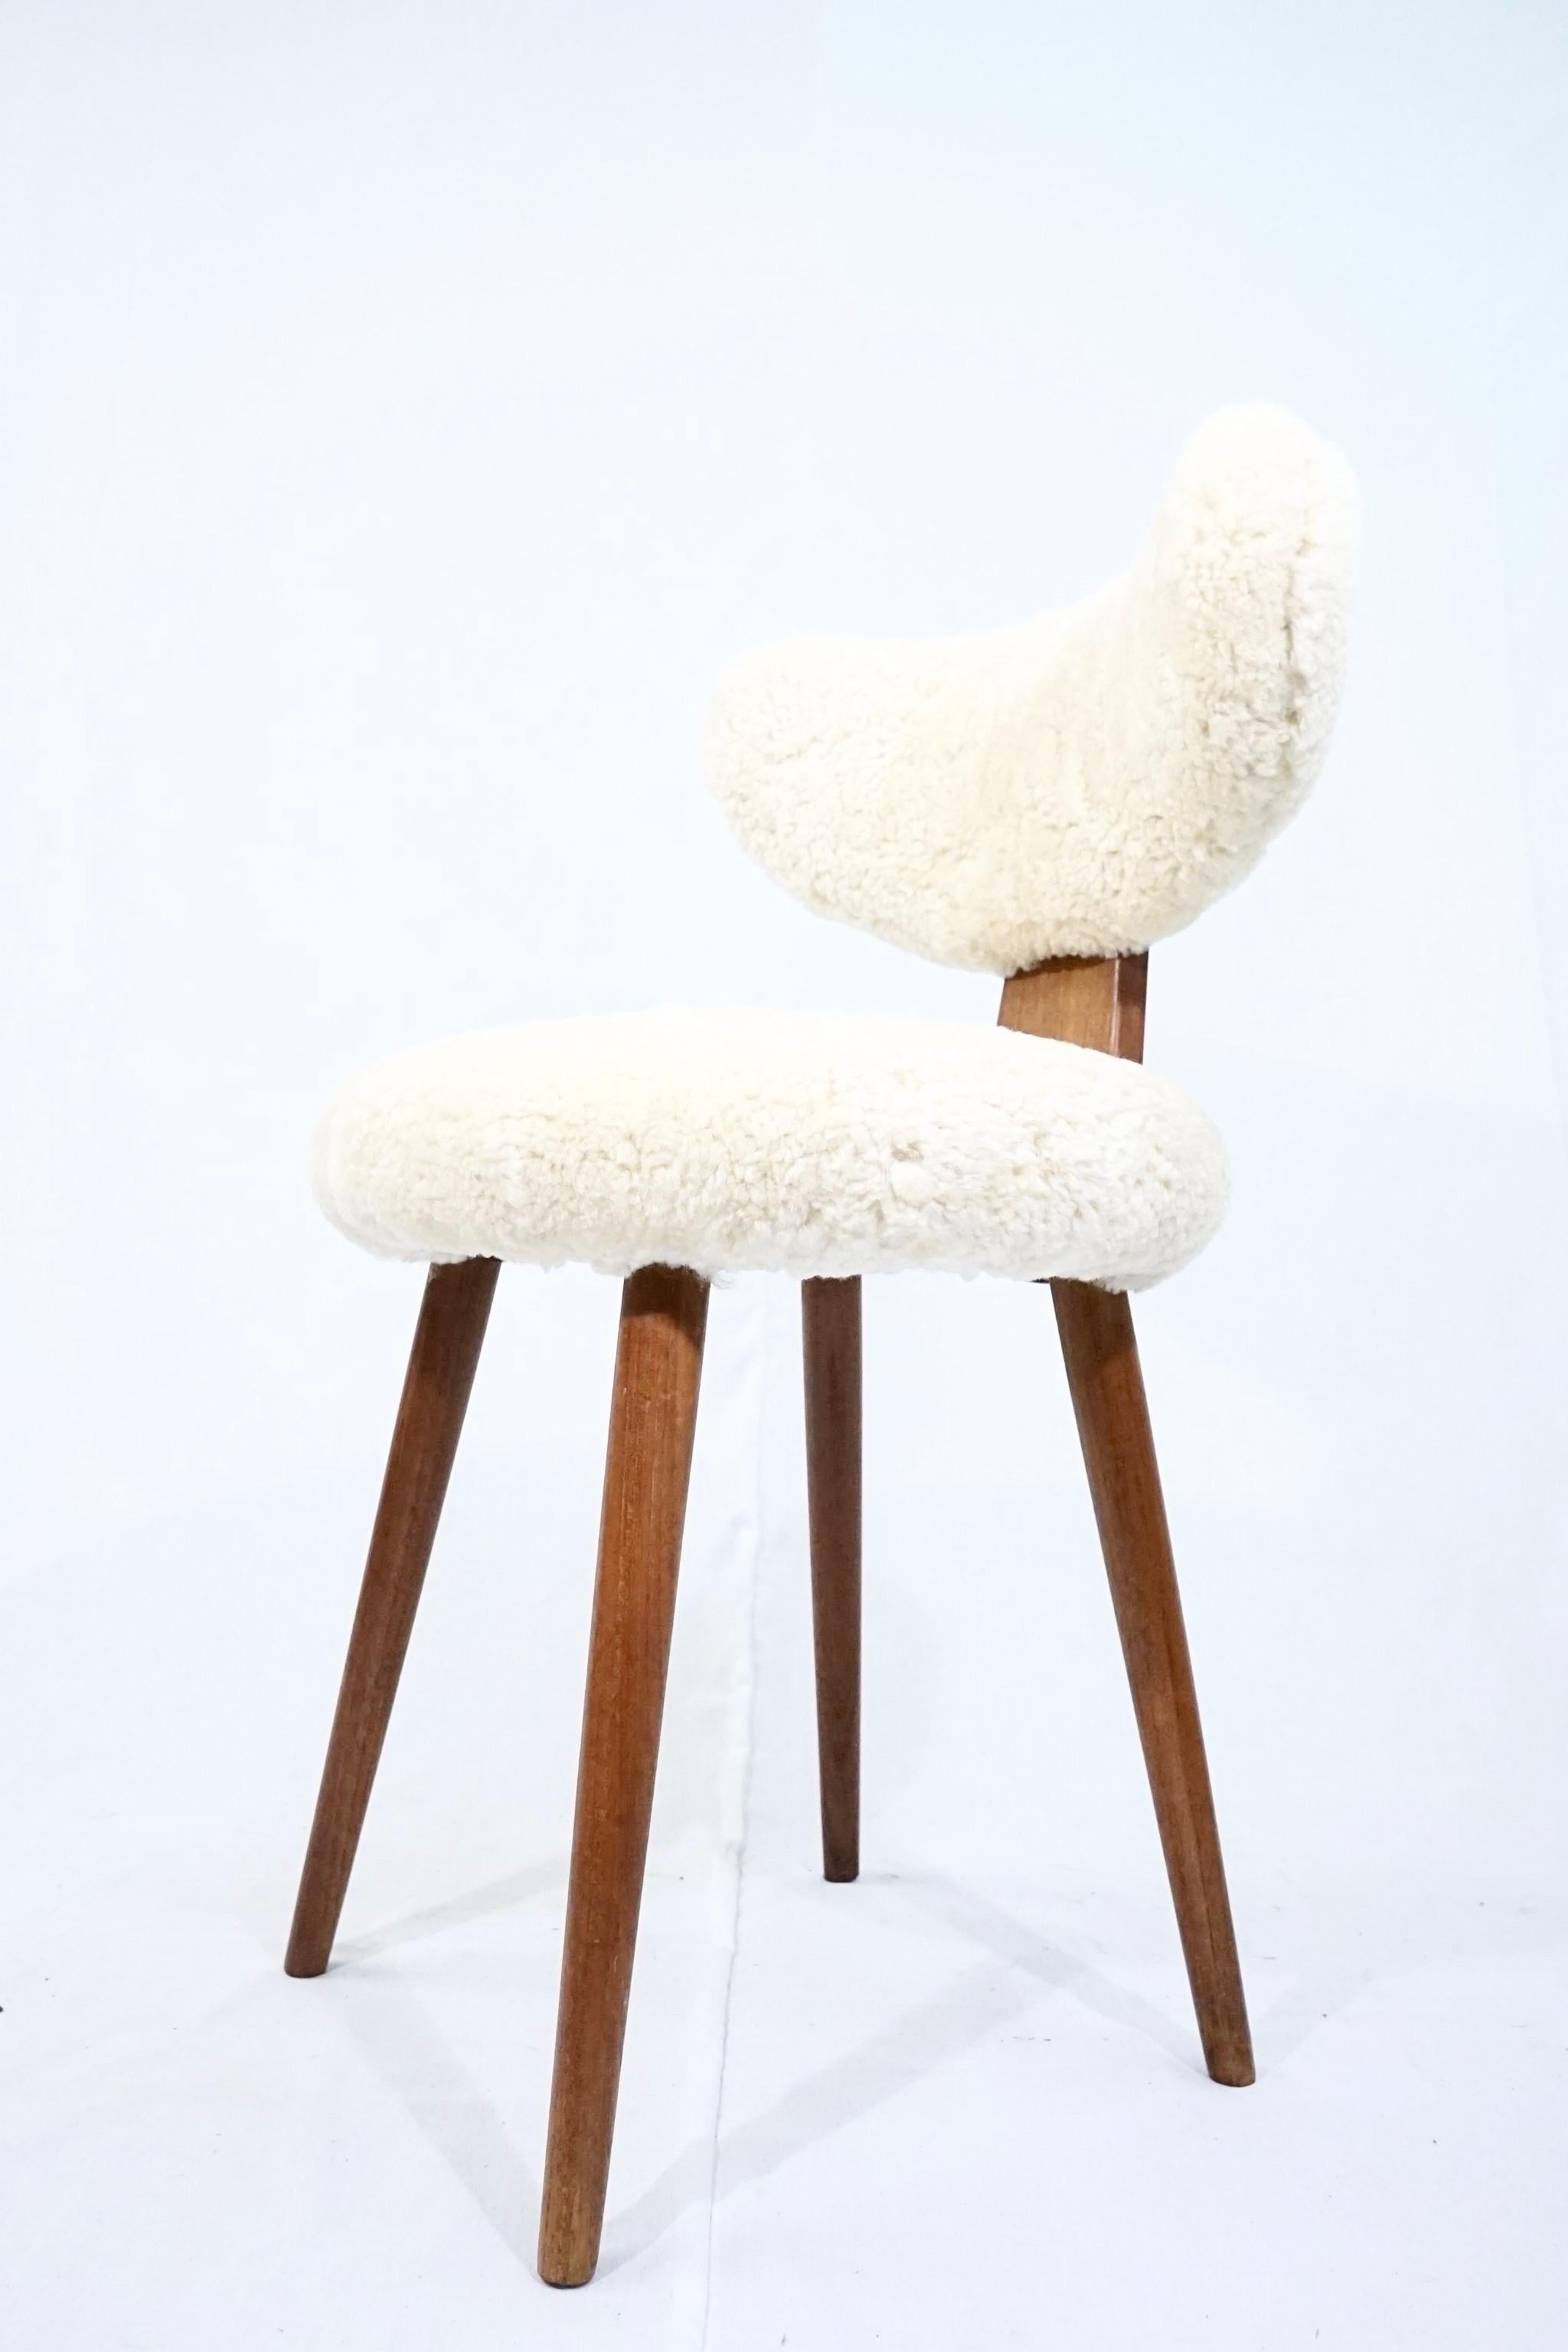 Oiled Scandinavian Vanity Table Chair in Solid Teak with Lambs Wool